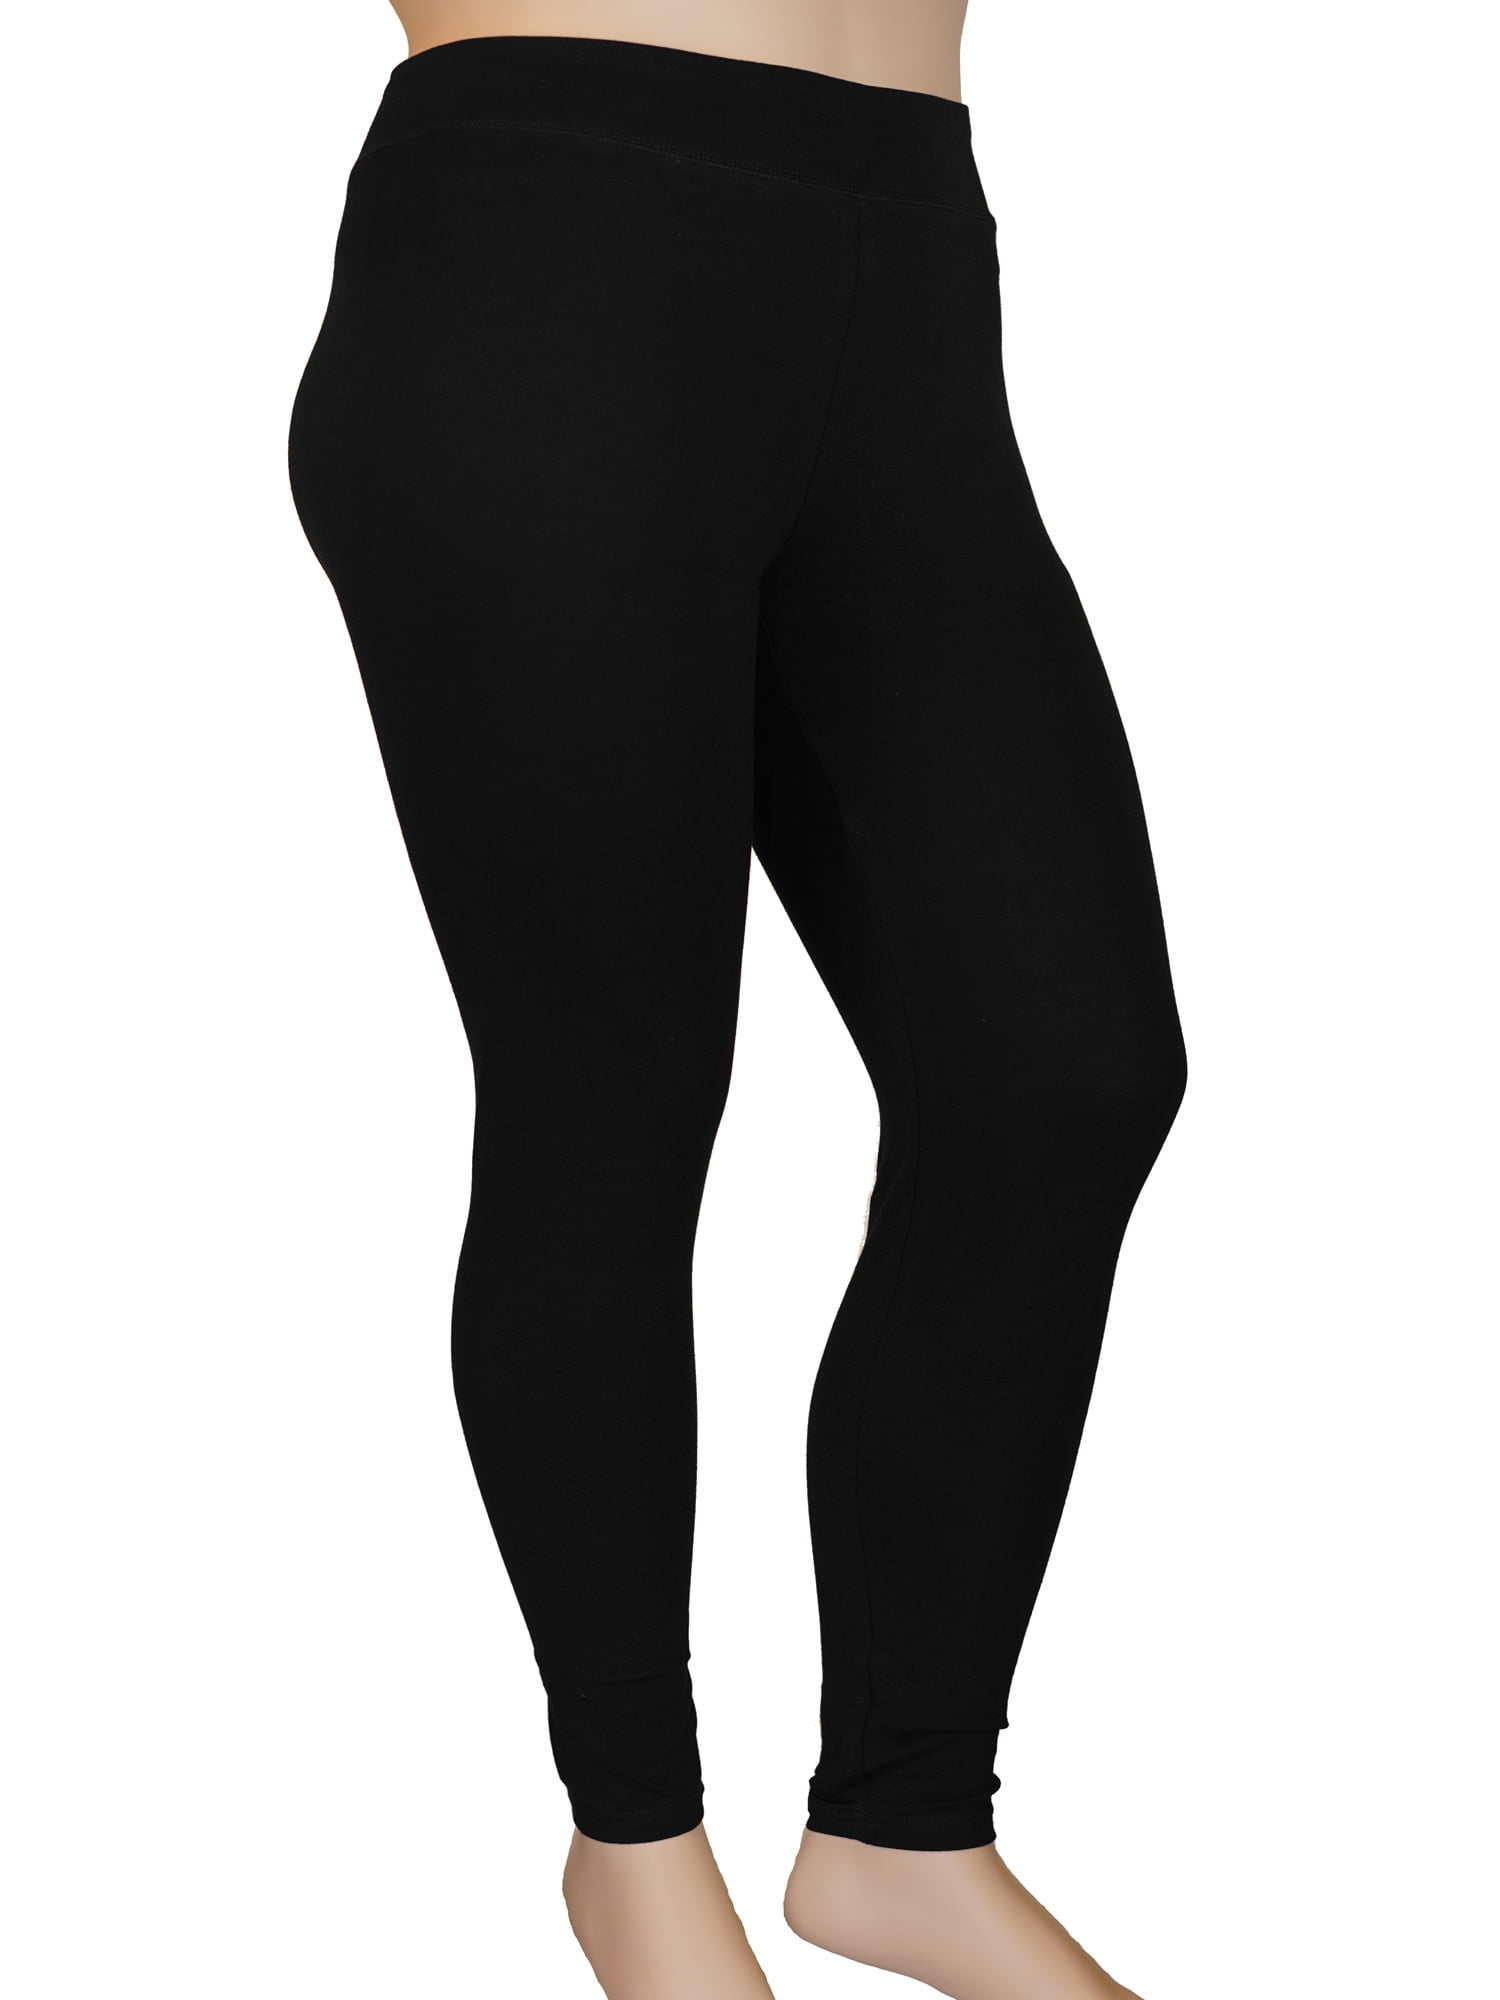 Buy TNNZEET 3 Pack Plus Size Capri Leggings for Women, High